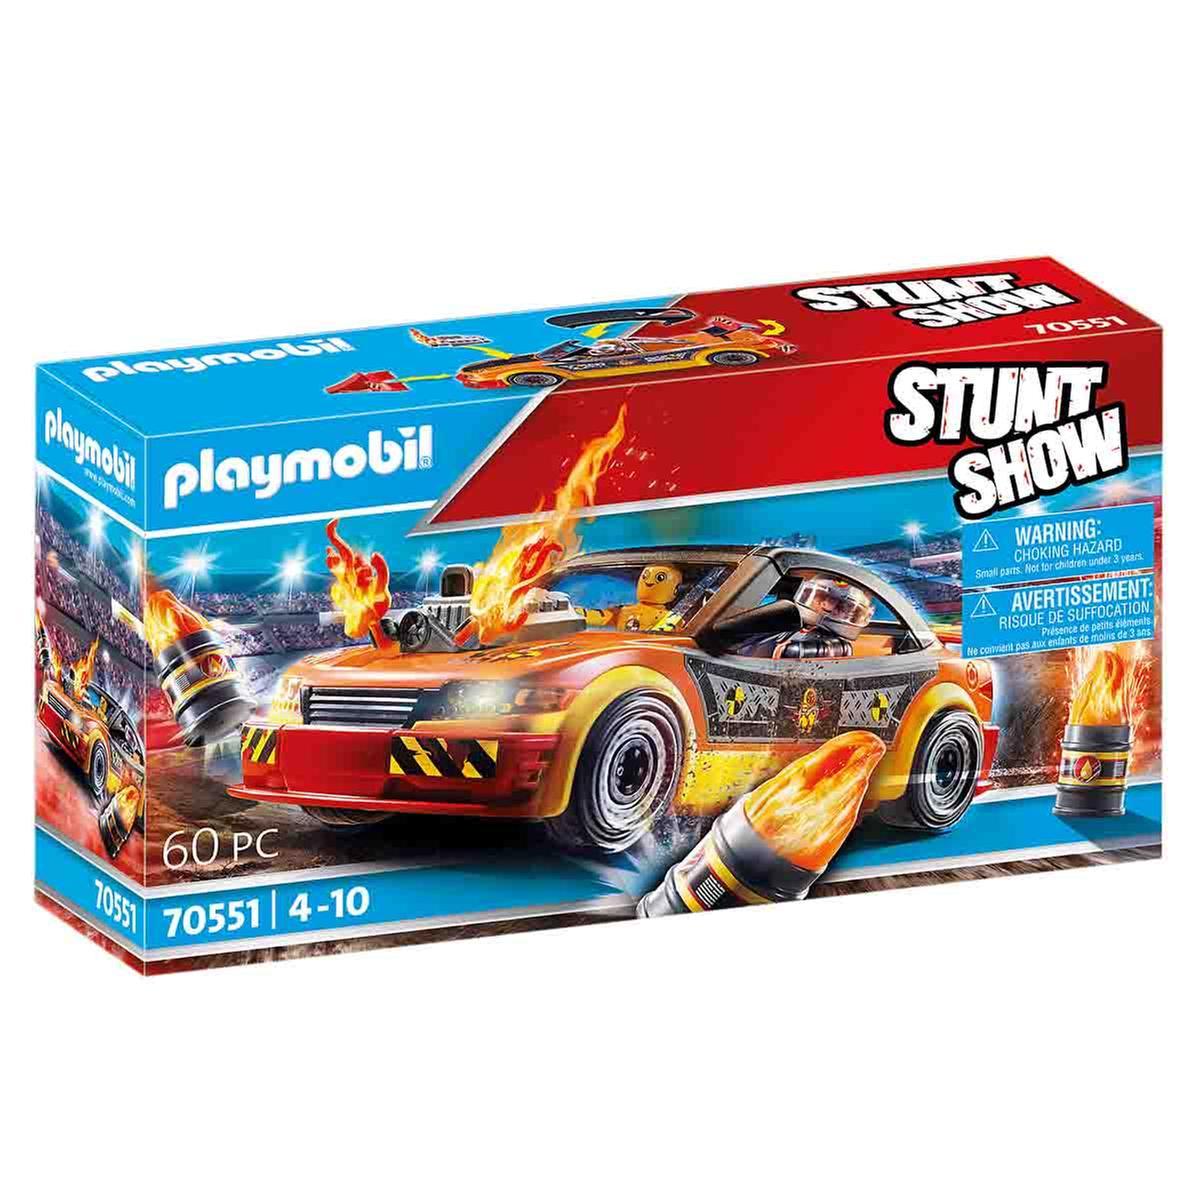 Playmobil - Stuntshow Crashcar - 70551 | Miscellaneous | Toys"R"Us España